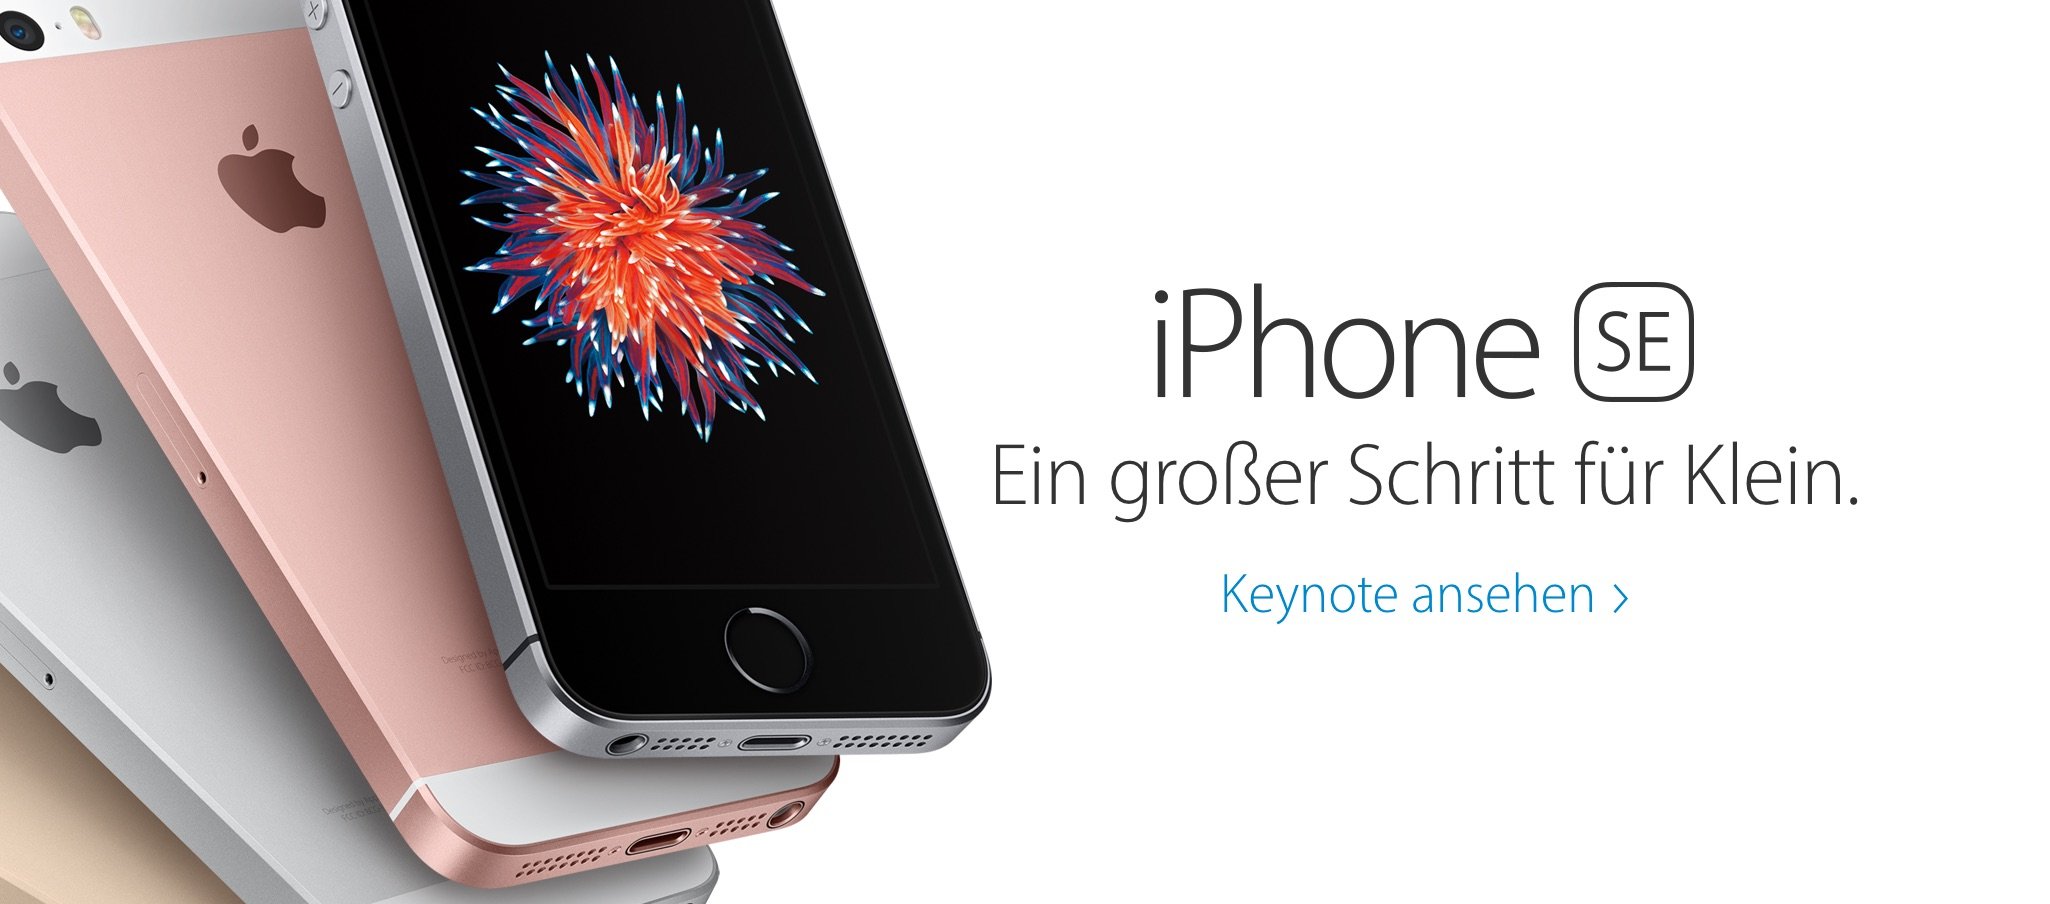 Euro Preise Deutschland für iPhone SE, iPad Pro, Apple Watch 6